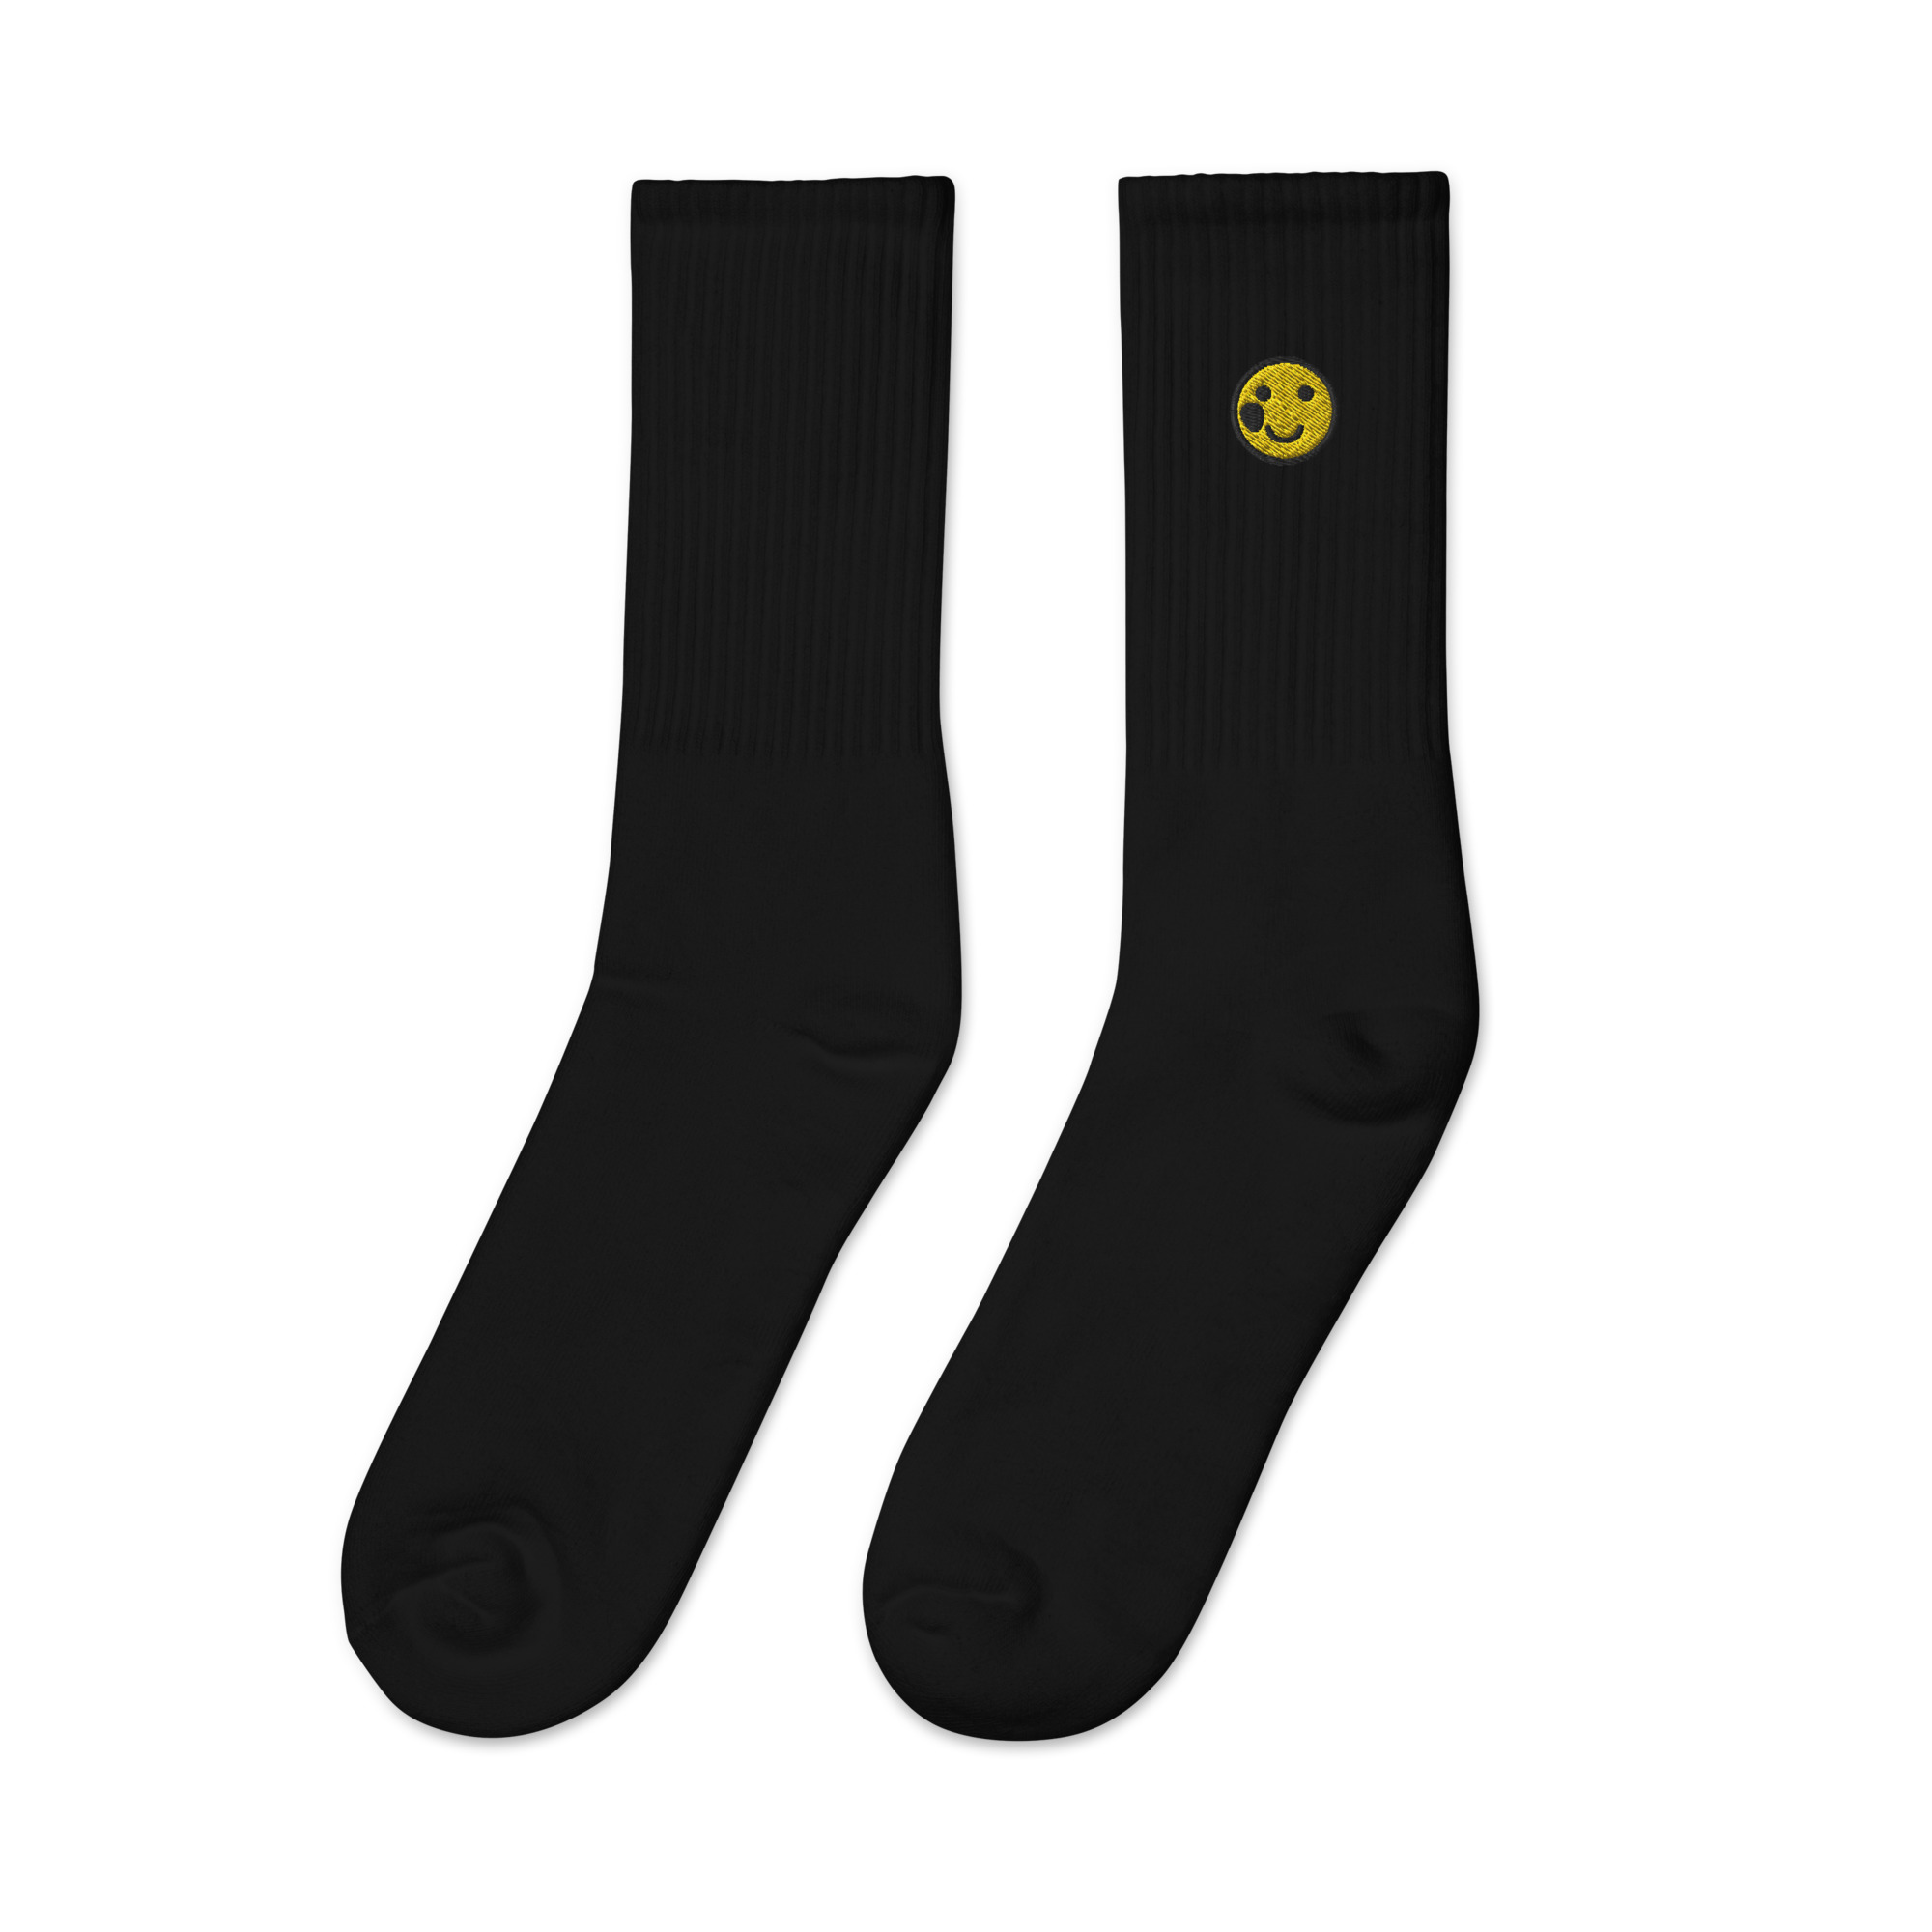 embroidered-crew-socks-black-left-6542870cc45aa.jpg